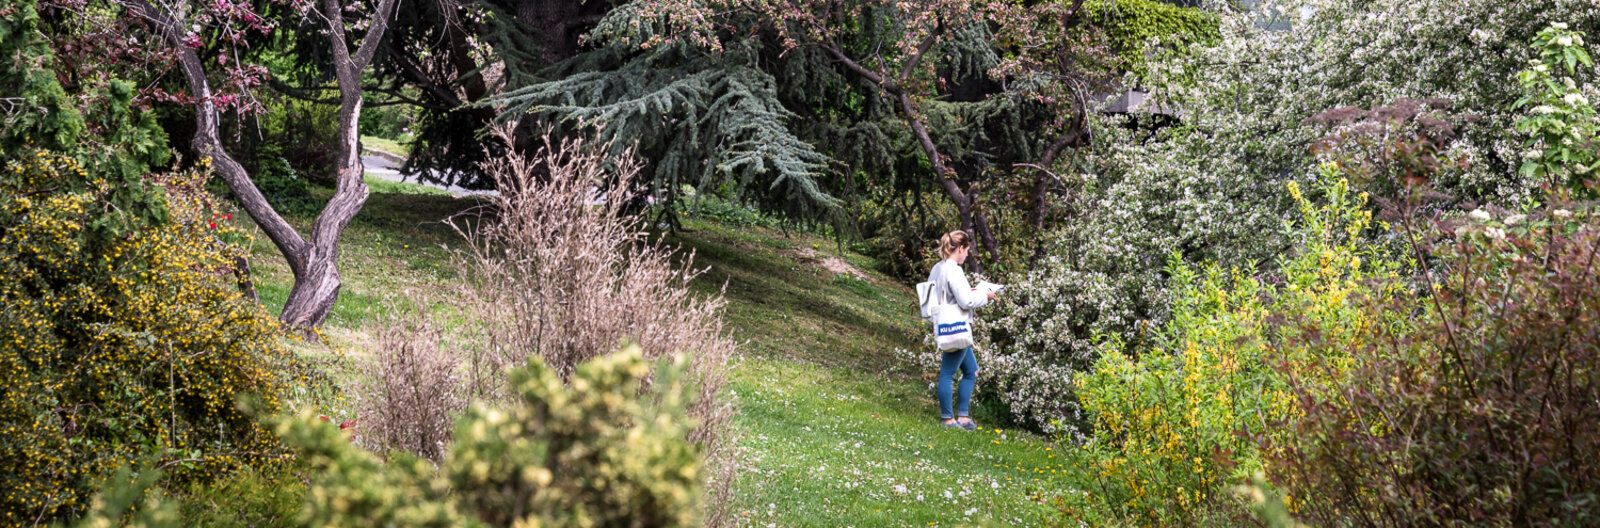 Színpompa három évszakon keresztül – Botanikus kertek, arborétumok és kertek Budapesten és környékén